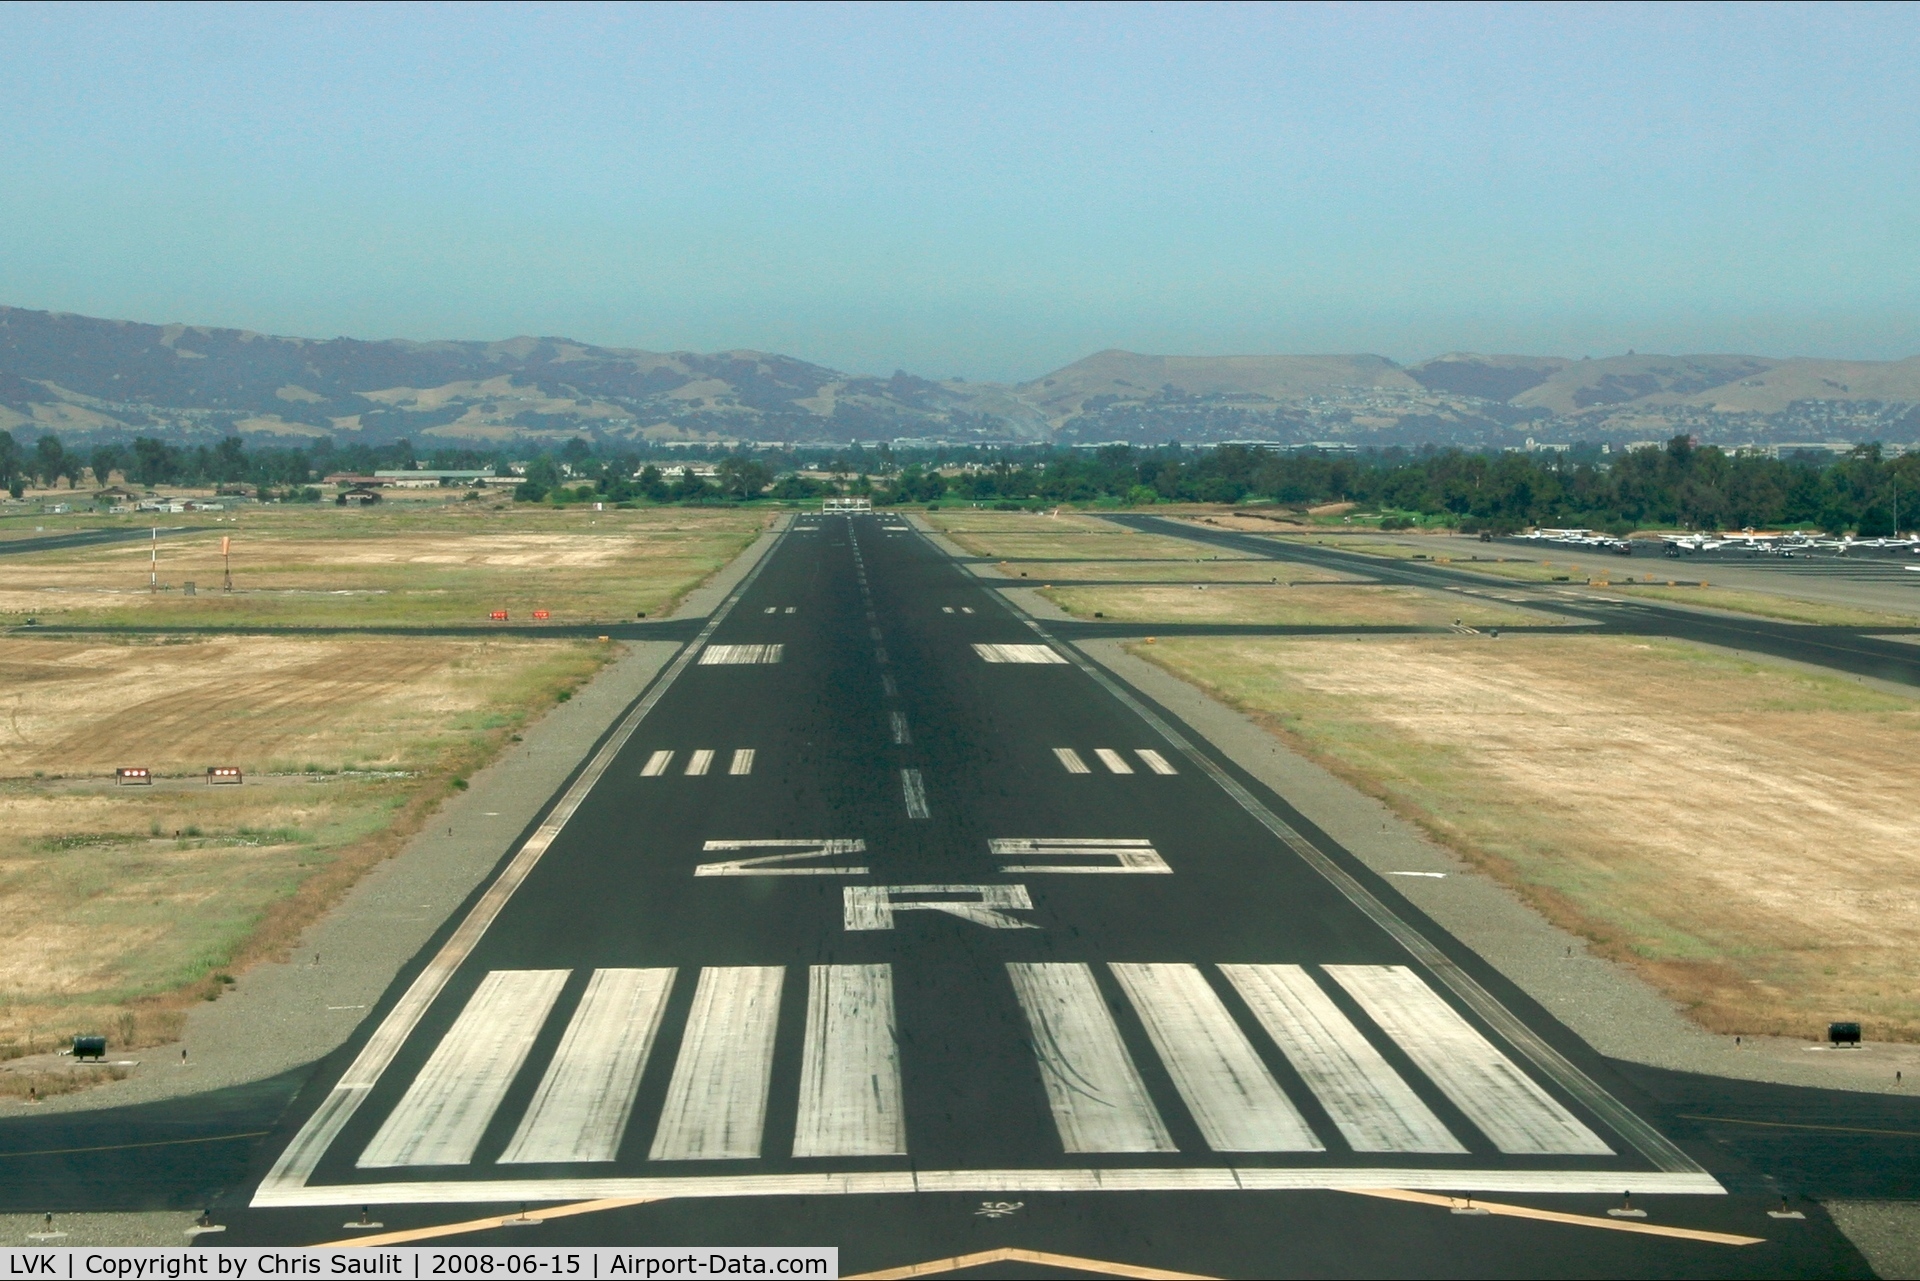 Livermore Municipal Airport (LVK) - Short final, runway 25R.